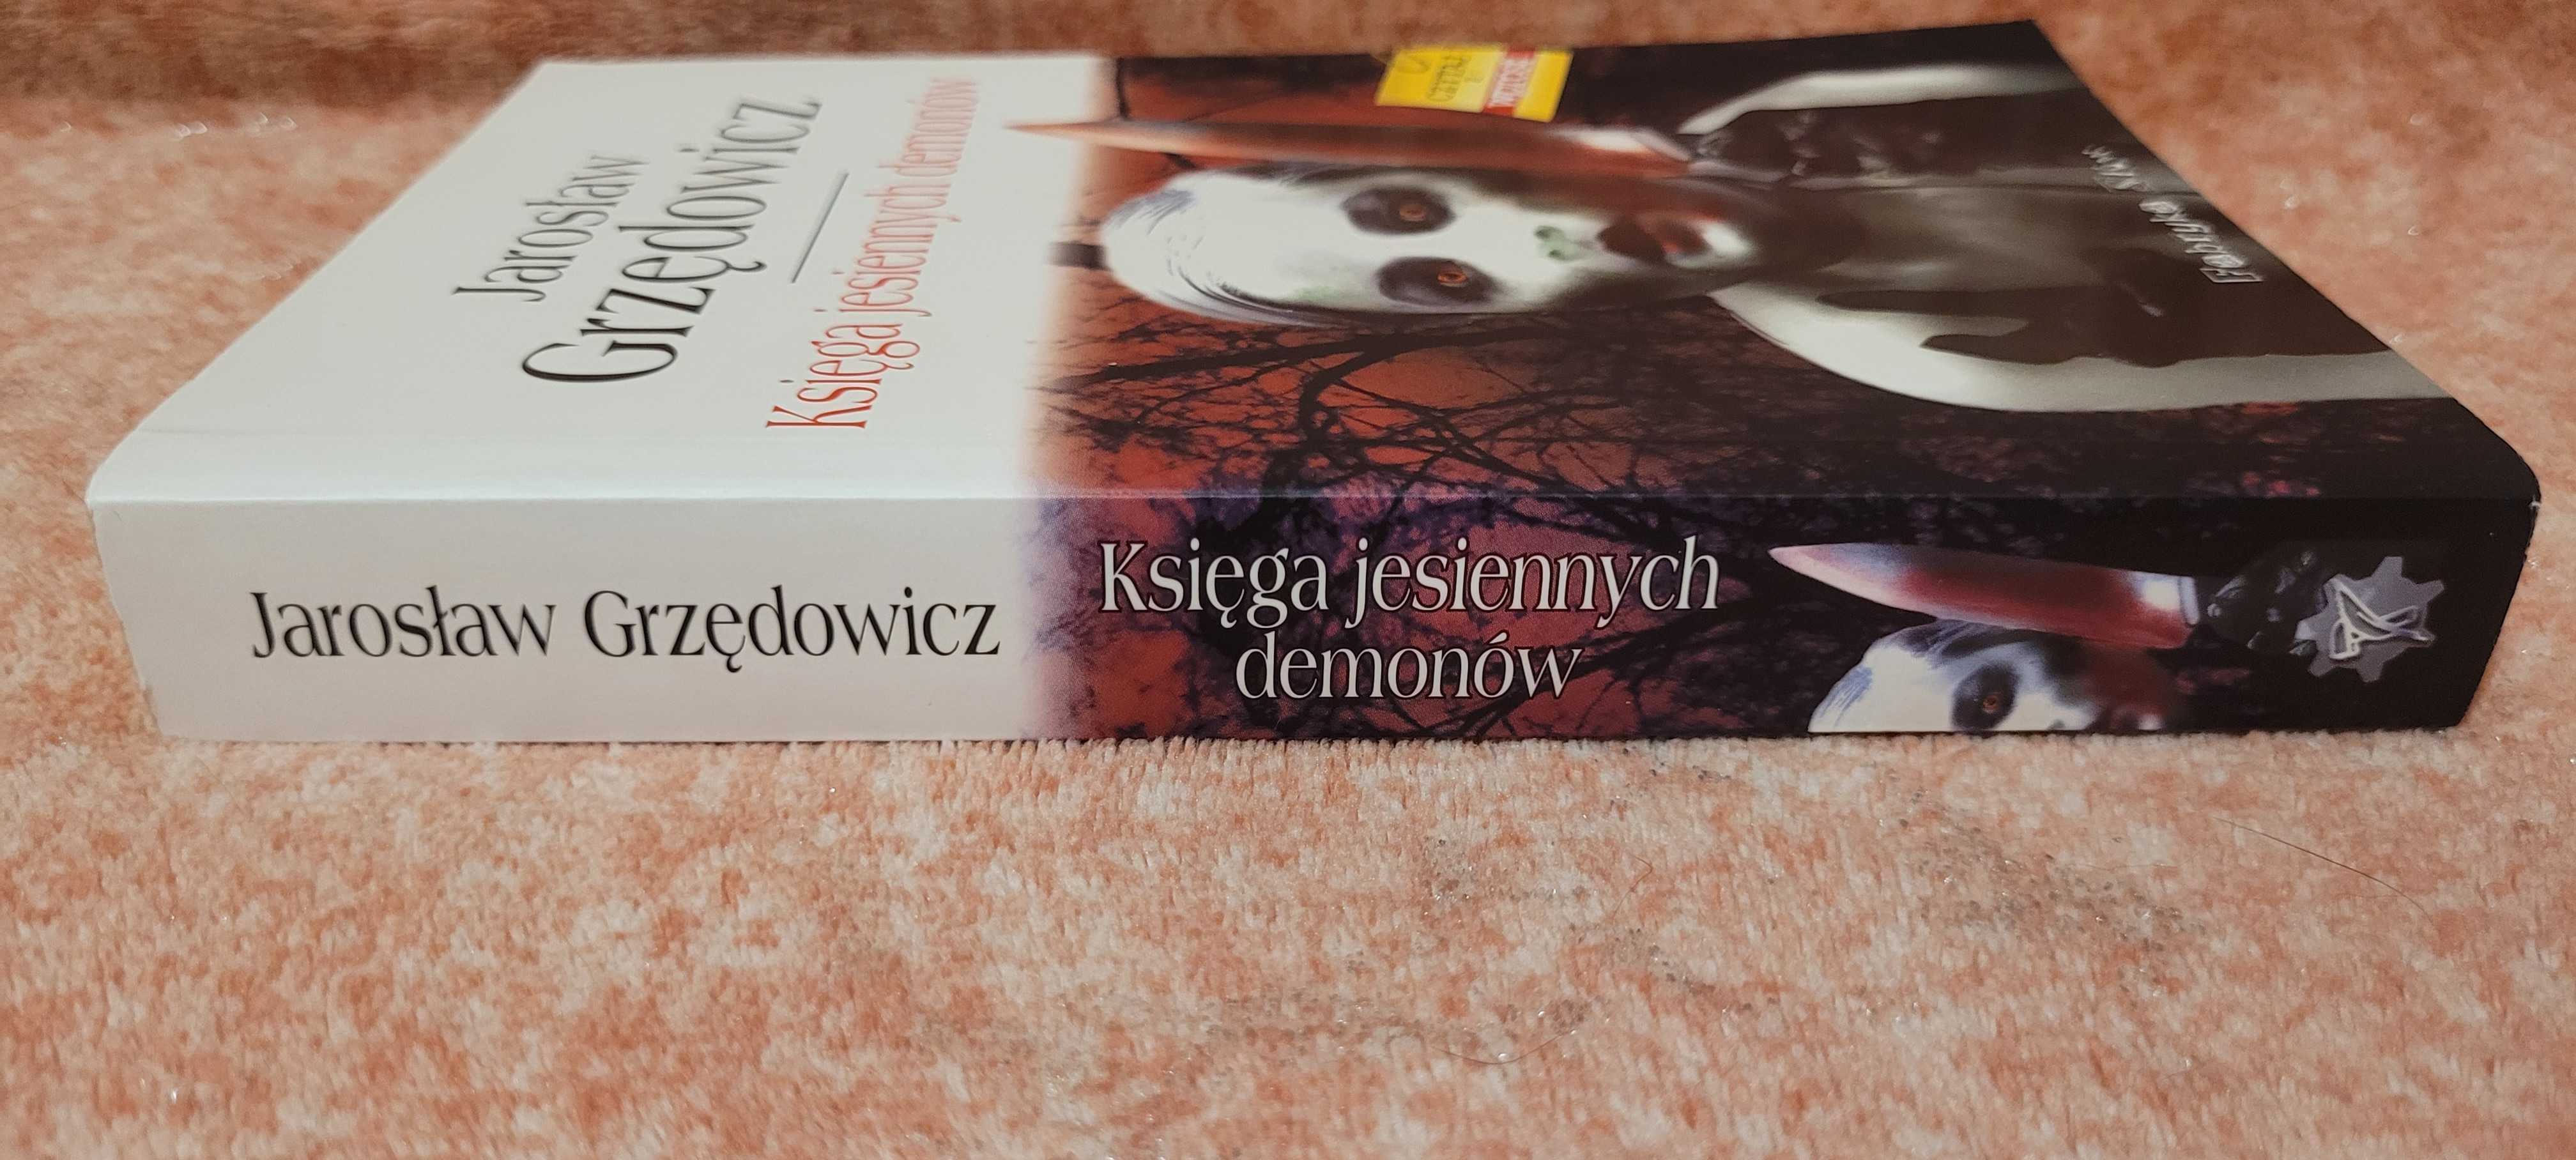 Księga jesiennych demonów Jarosław Grzędowicz